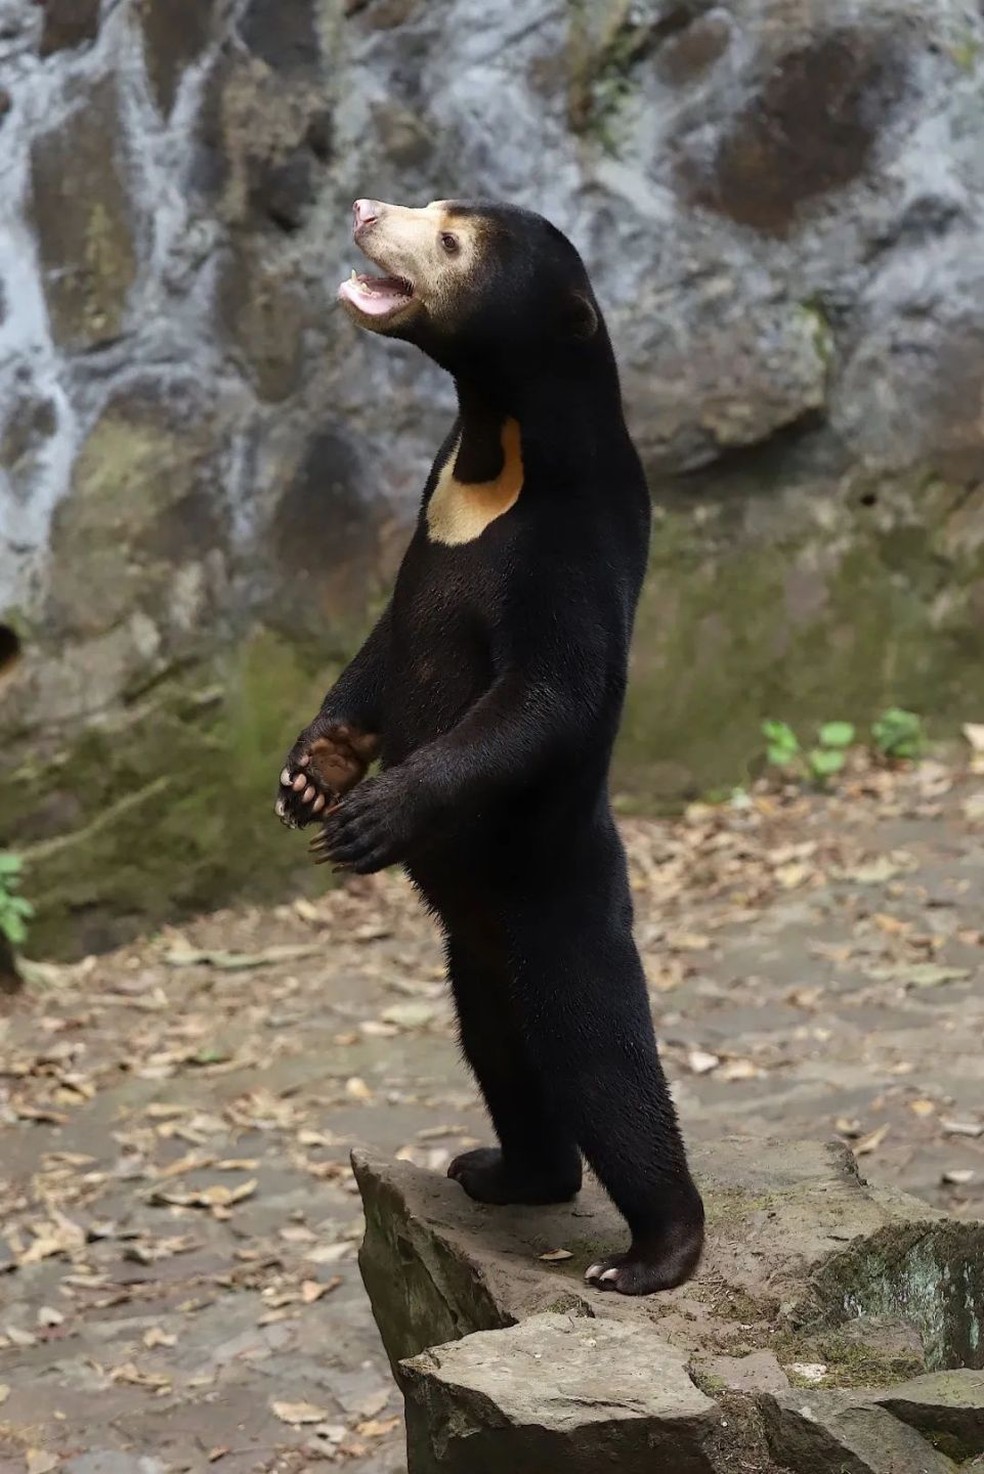 Urso 'humano' de zoológico chinês viraliza nas redes. Local divulgou fotos em alta definição para provar a veracidade do urso — Foto: Divulgação